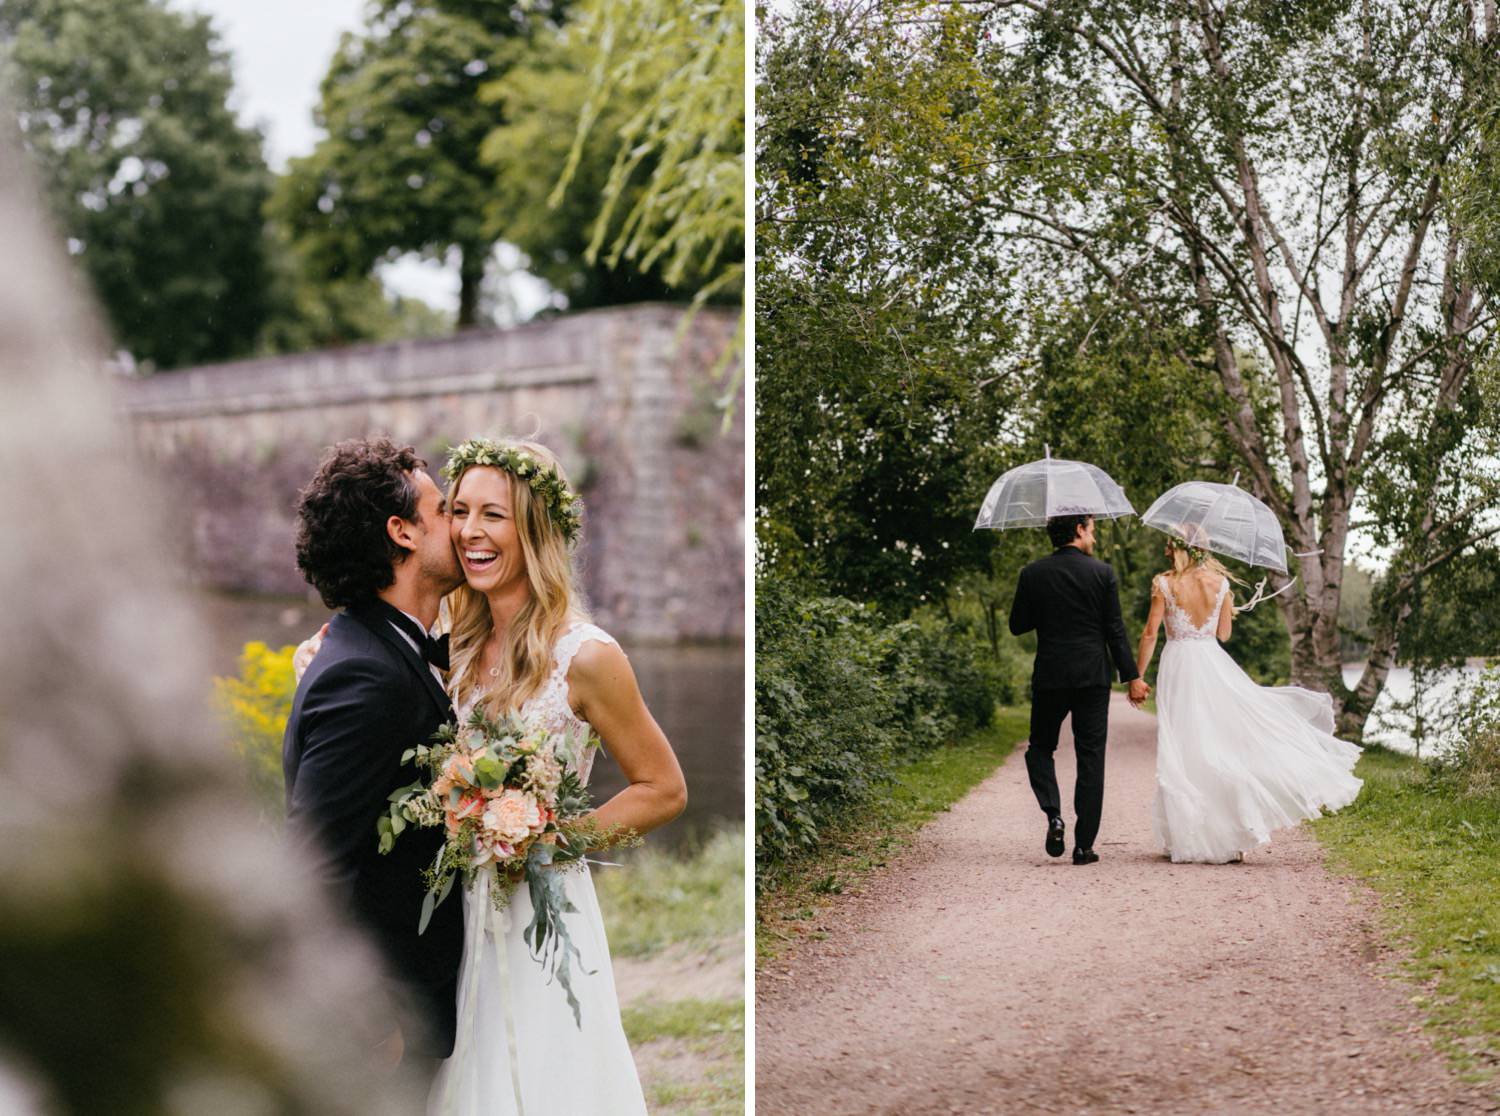 Das Brautpaar umarmt sich liebevoll und geht Hand in Hand mit Regenschirmen entlang des Alsterlaufs, während leichter Nieselregen fällt. Trotz des Wetters strahlen sie vor Glück und genießen den romantischen Spaziergang entlang des malerischen Ufers der Alster.